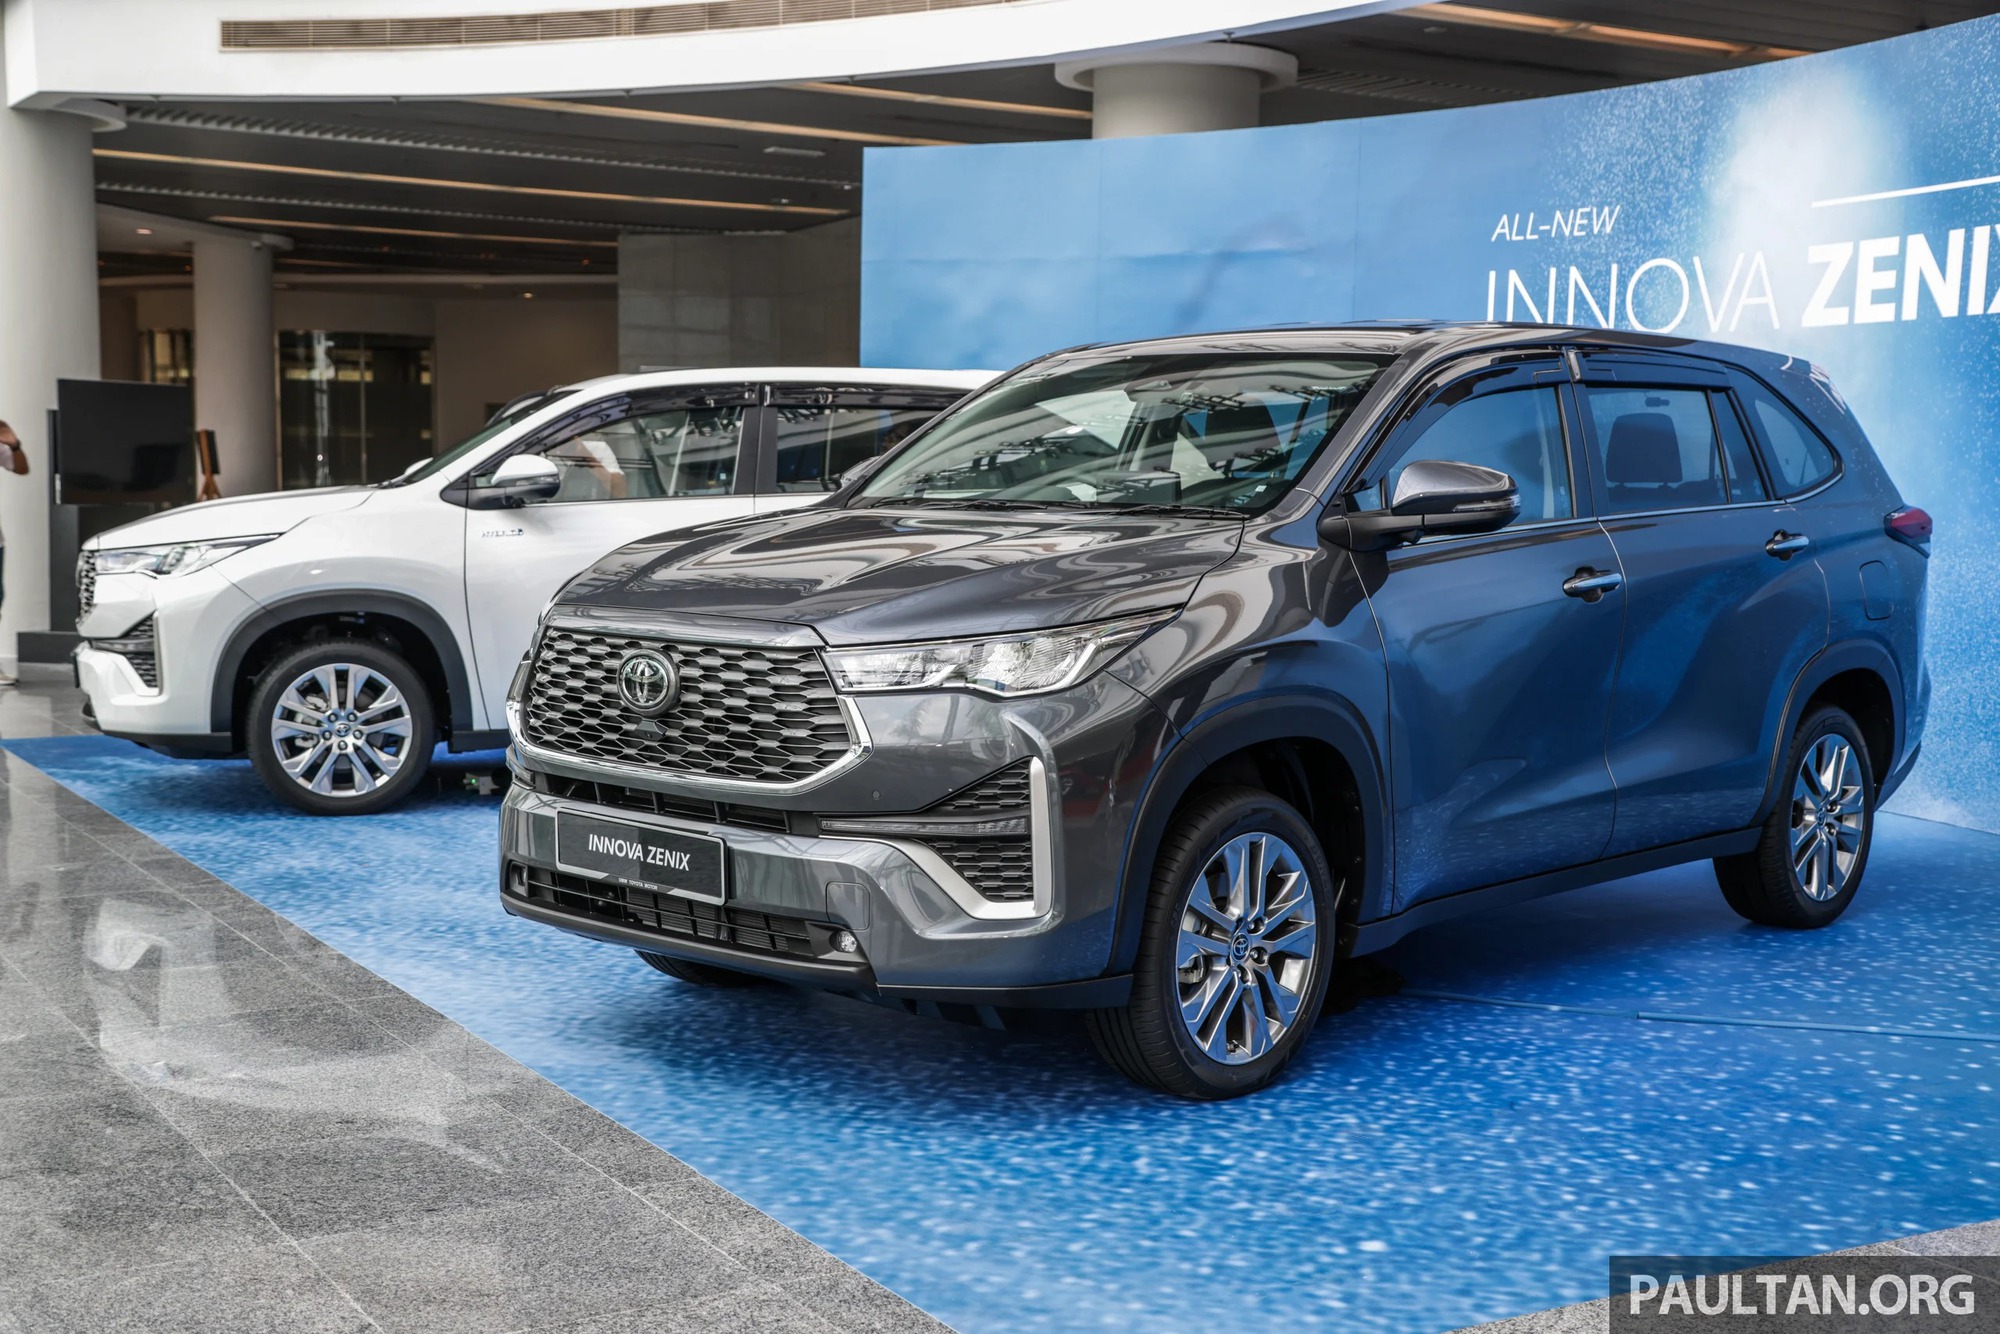 Toyota Innova đời mới chính thức ra mắt Malaysia, bản cũ sẽ được giữ lại trong khu vực với mỗi xe một nhiệm vụ riêng - Ảnh 1.